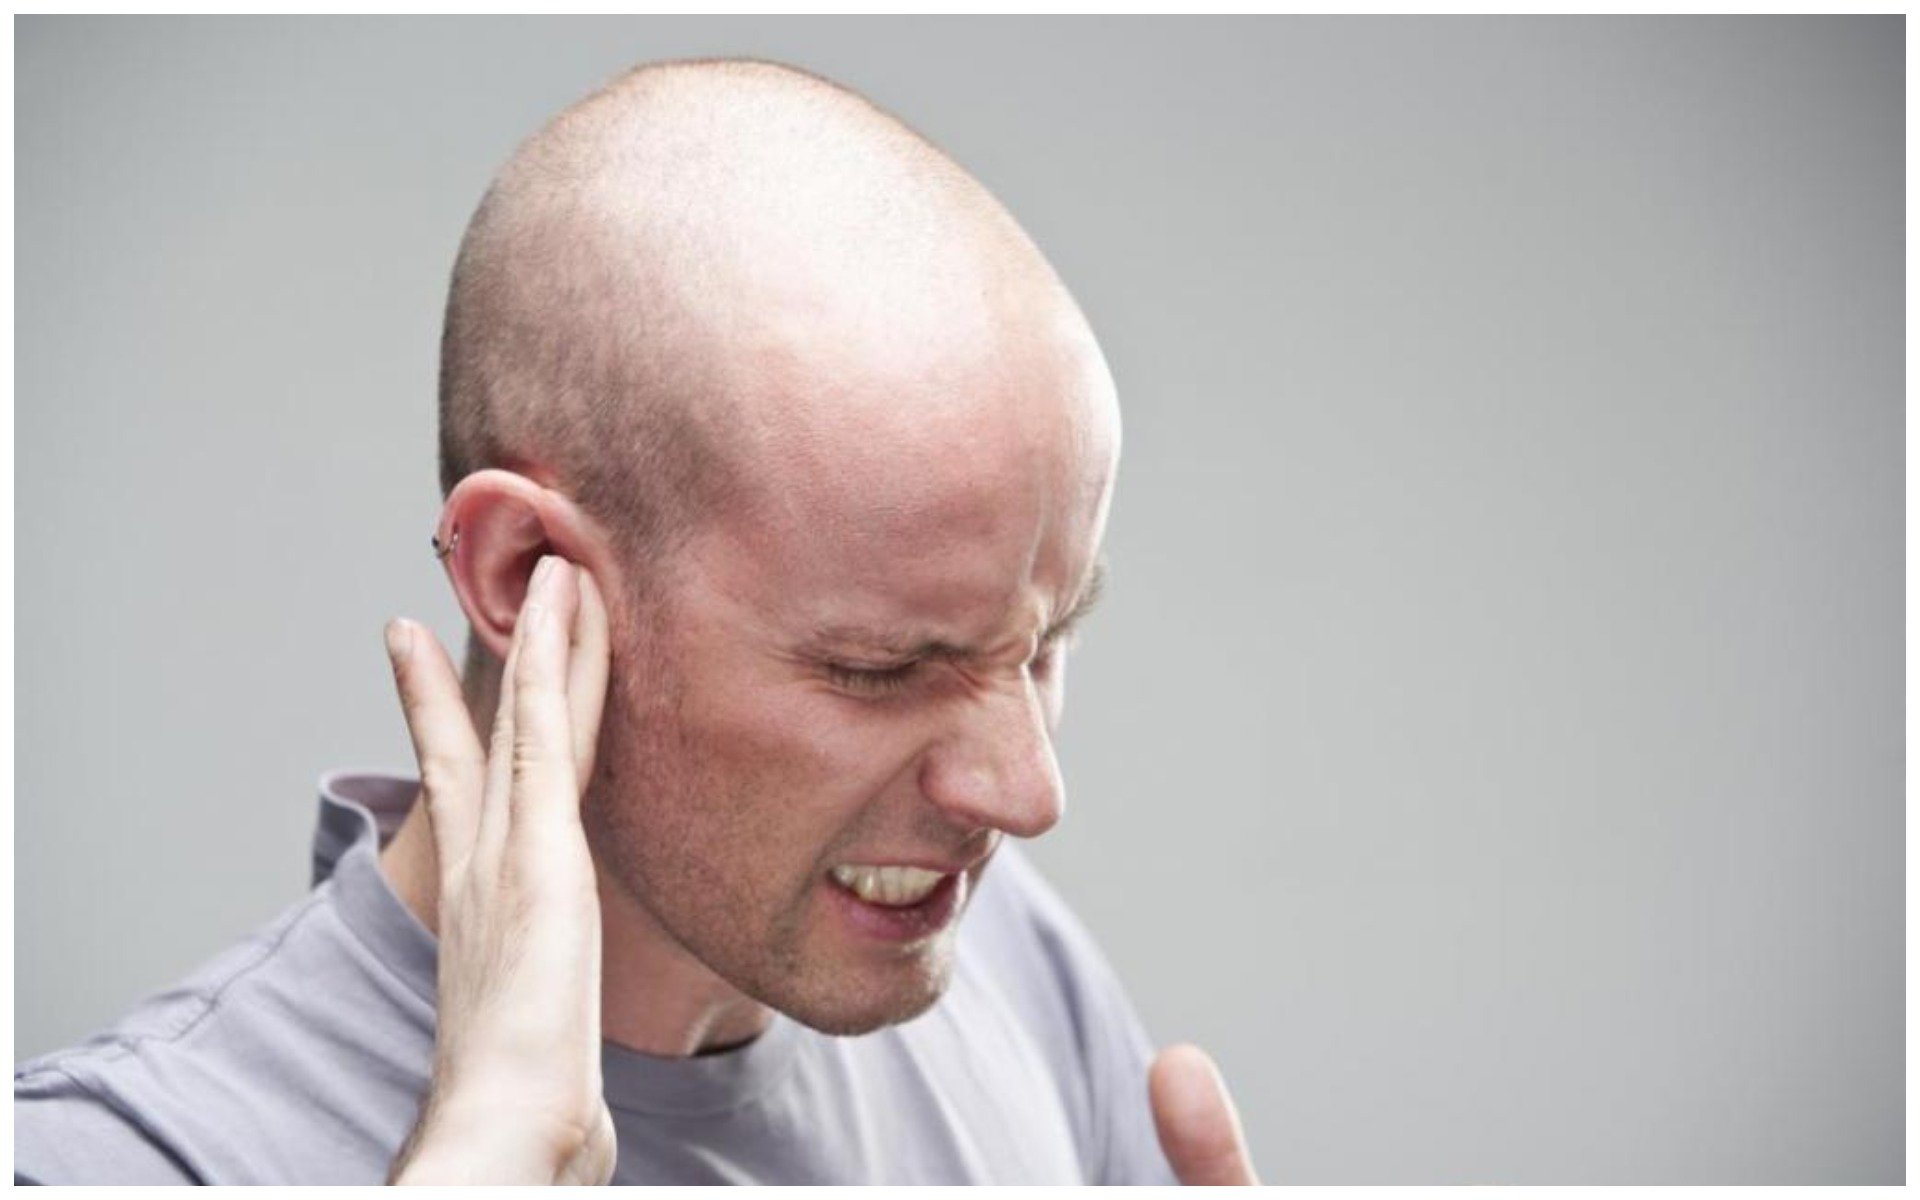 Болит ухо можно греть